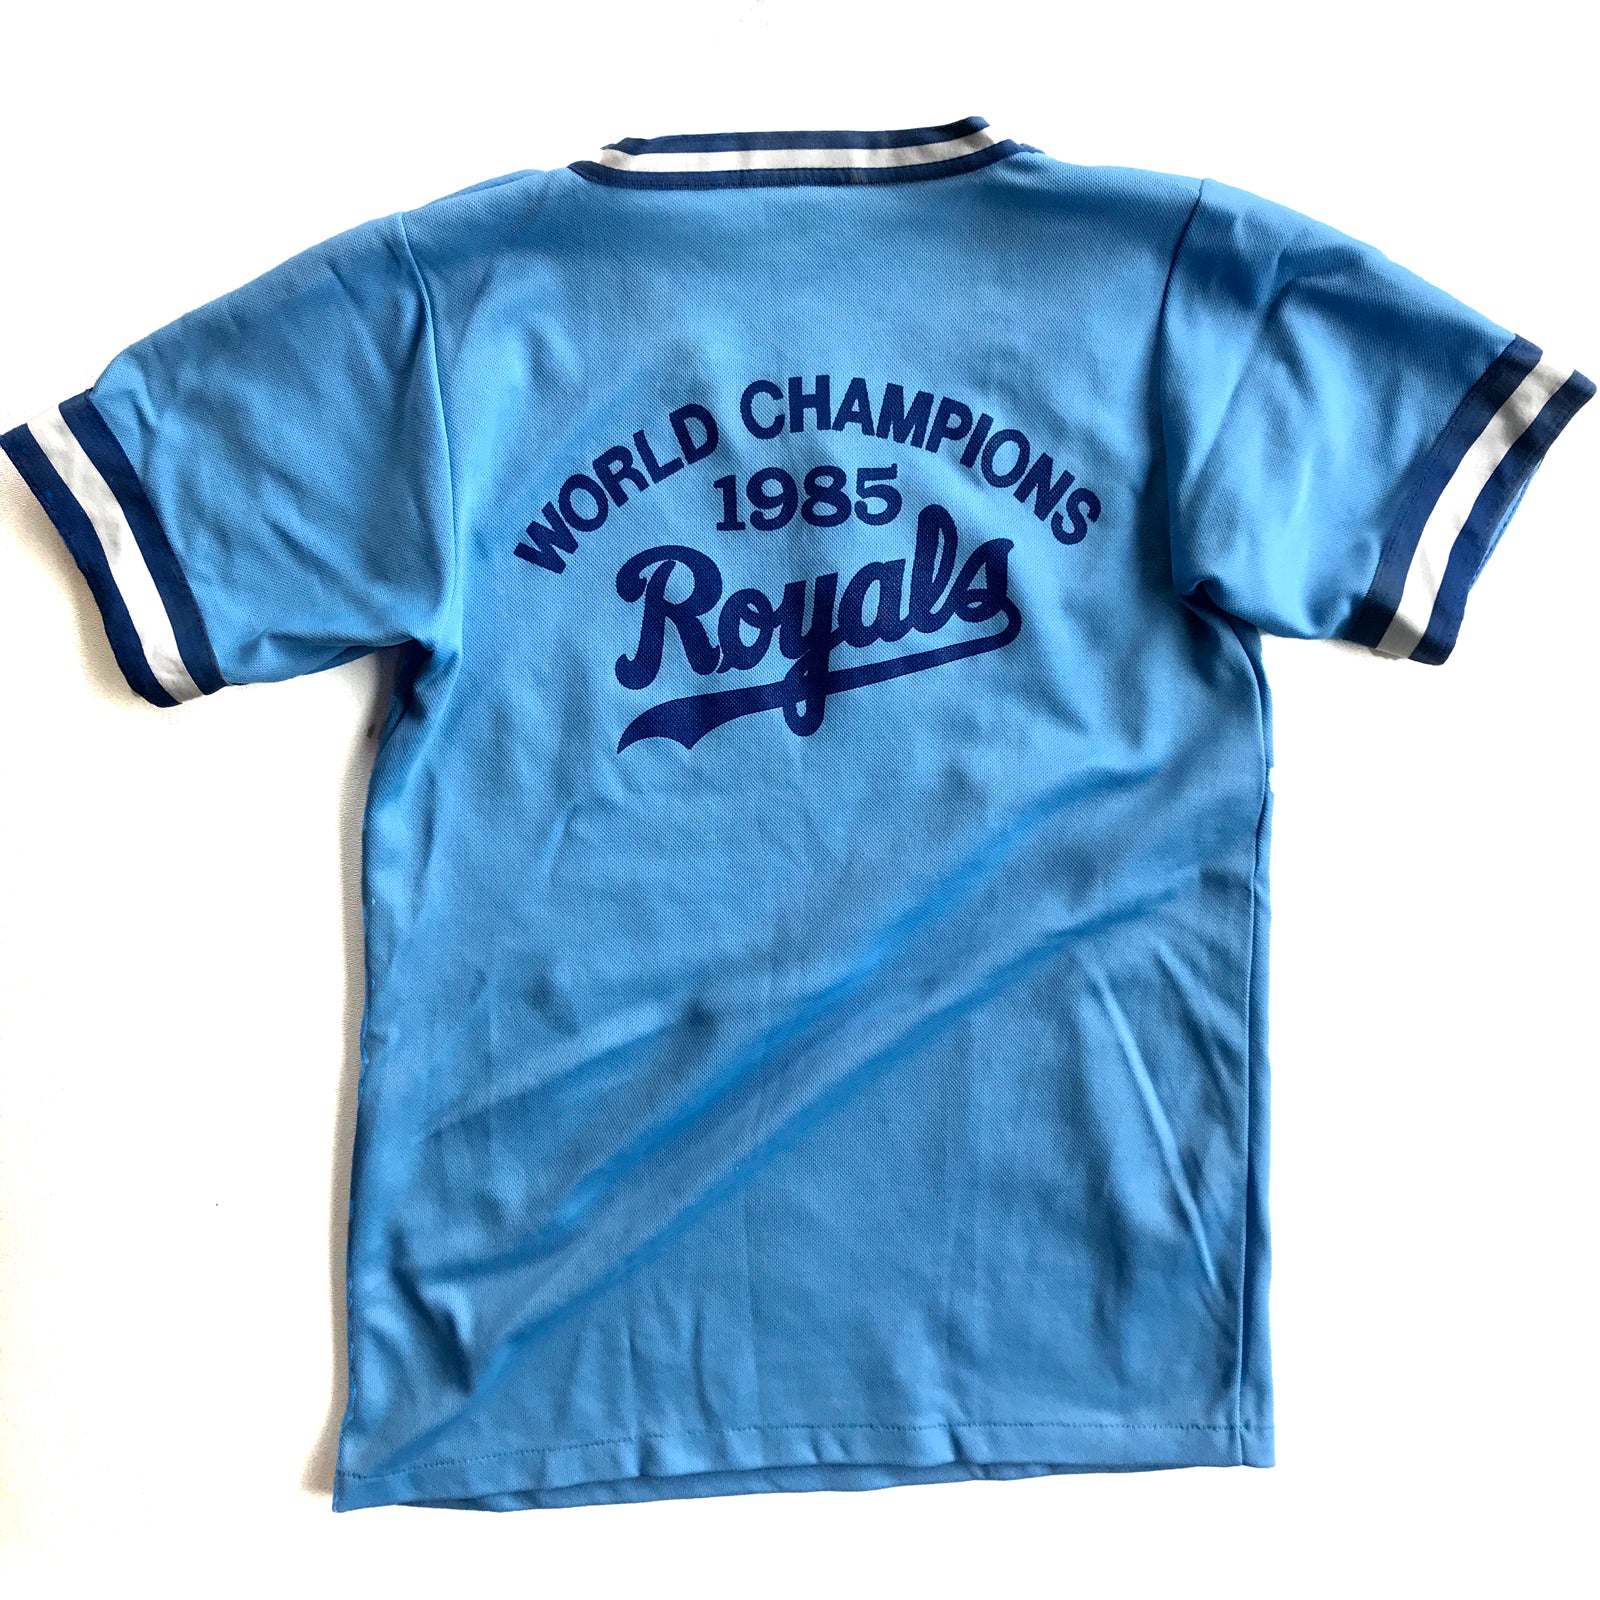 kc royals world series jersey